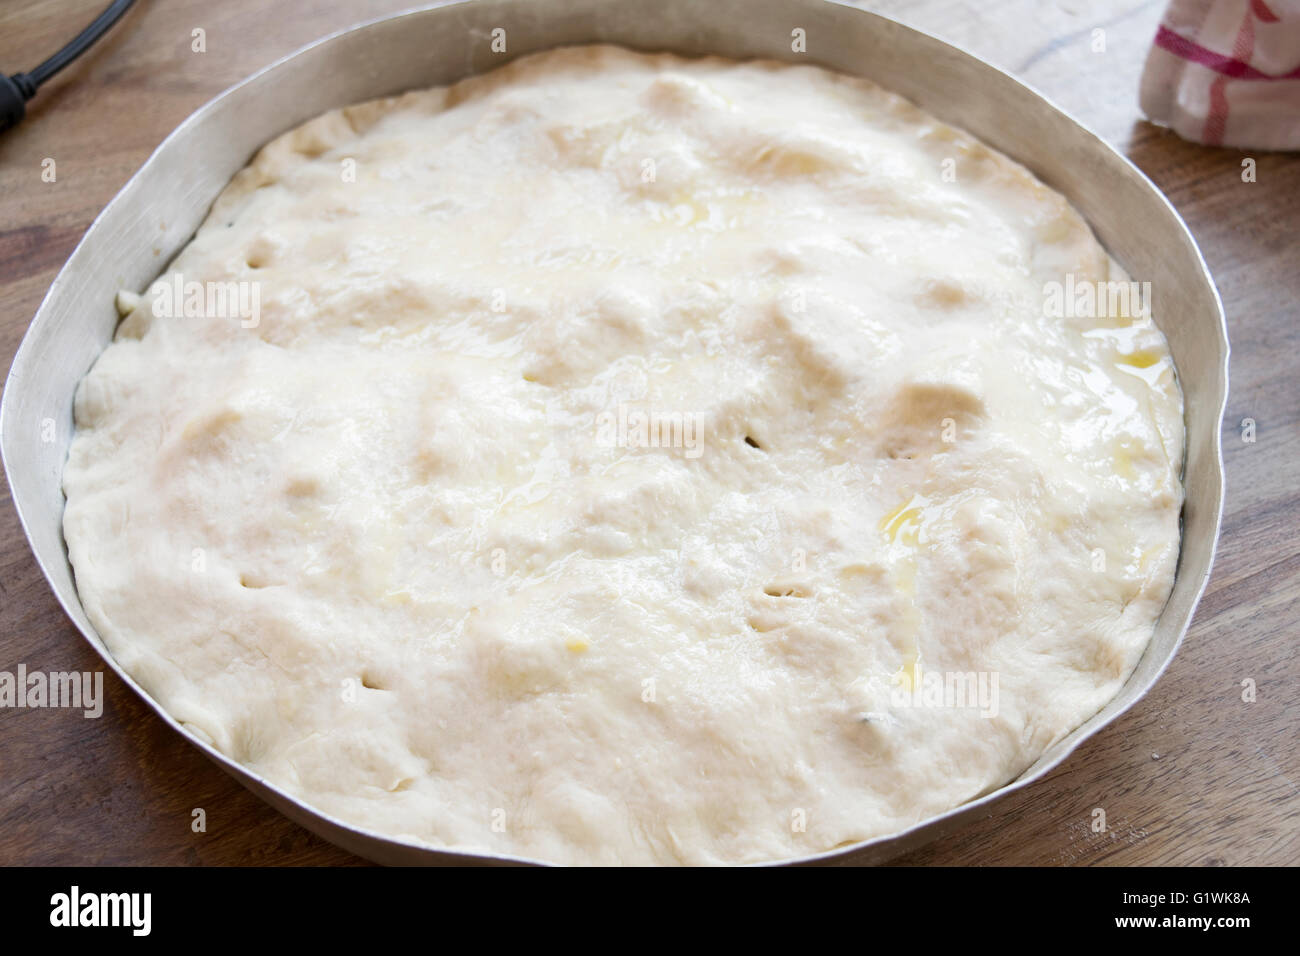 preparing dough pizza Stock Photo